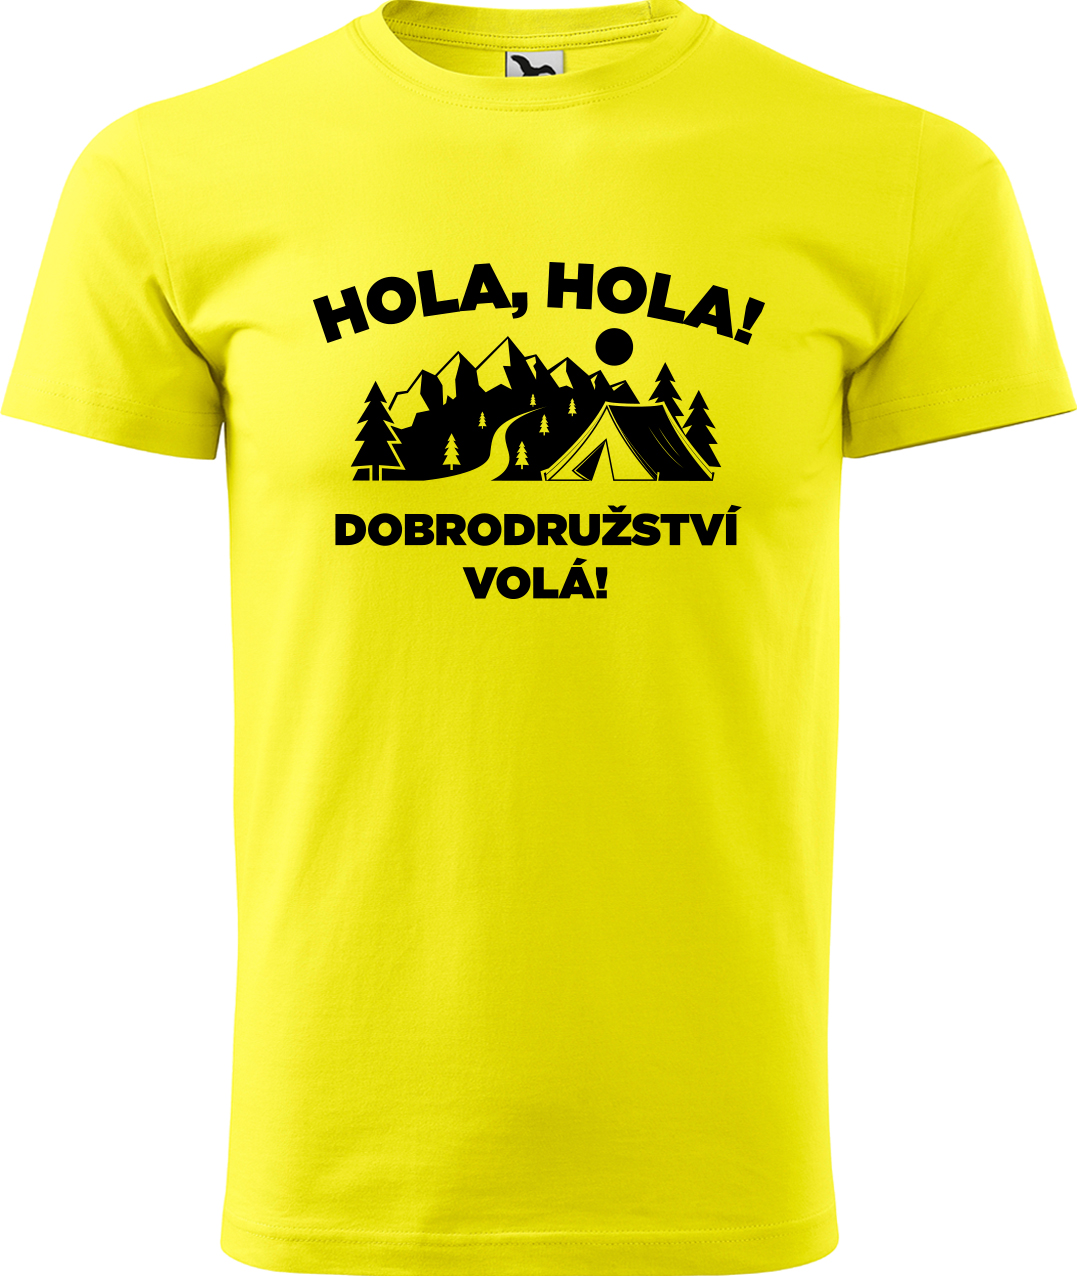 Pánské cestovatelské tričko - Hola hola! Dobrodružství volá! Velikost: 3XL, Barva: Žlutá (04), Střih: pánský